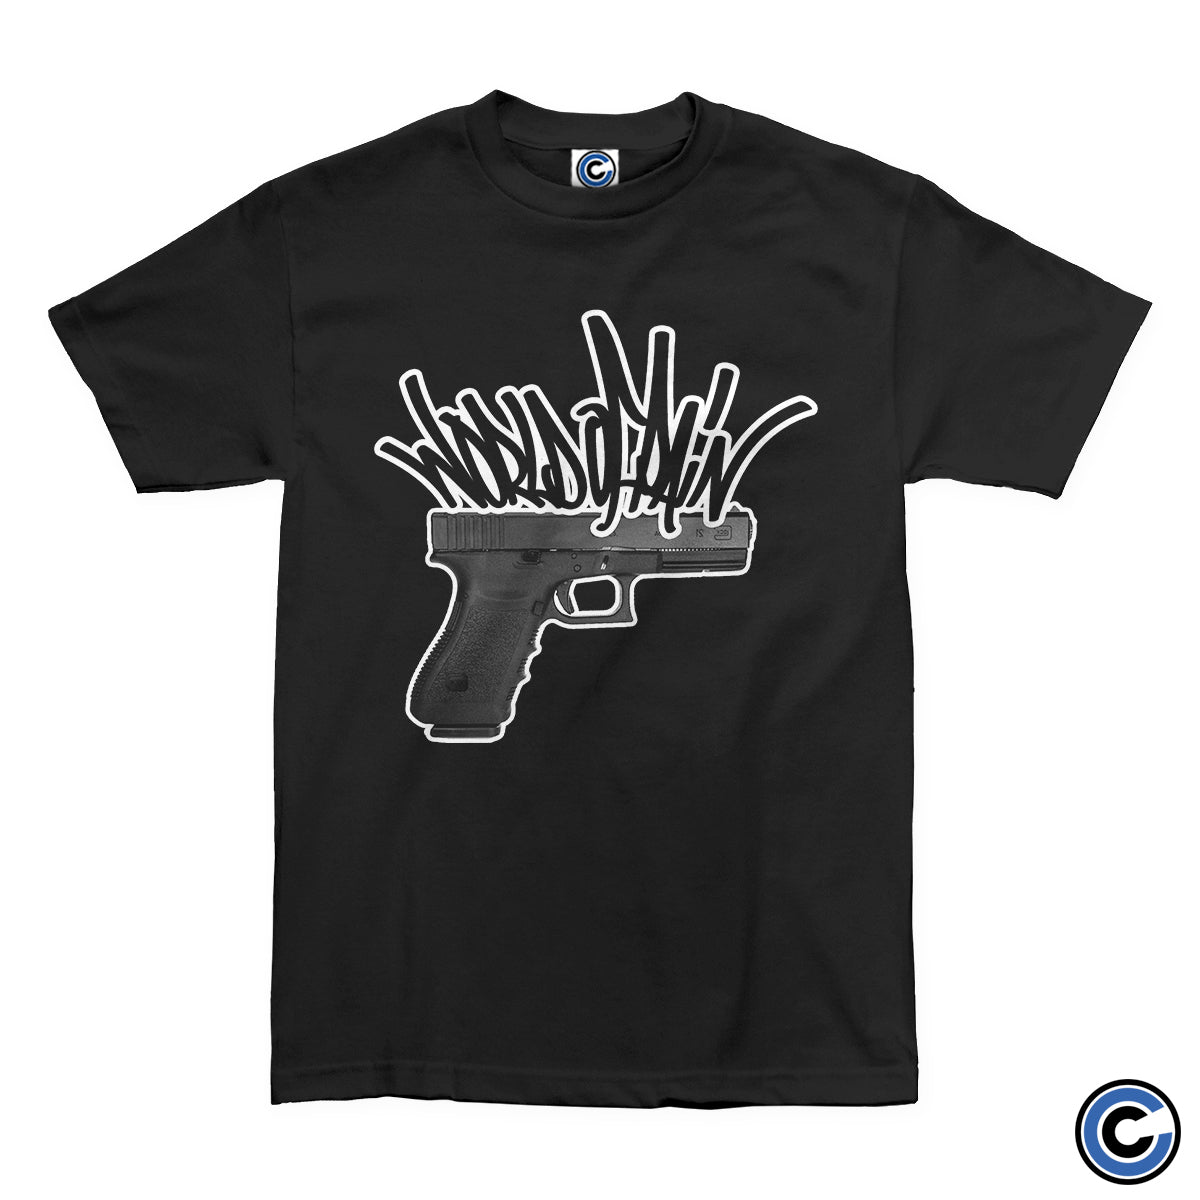 World of Pain "Handgun" Shirt